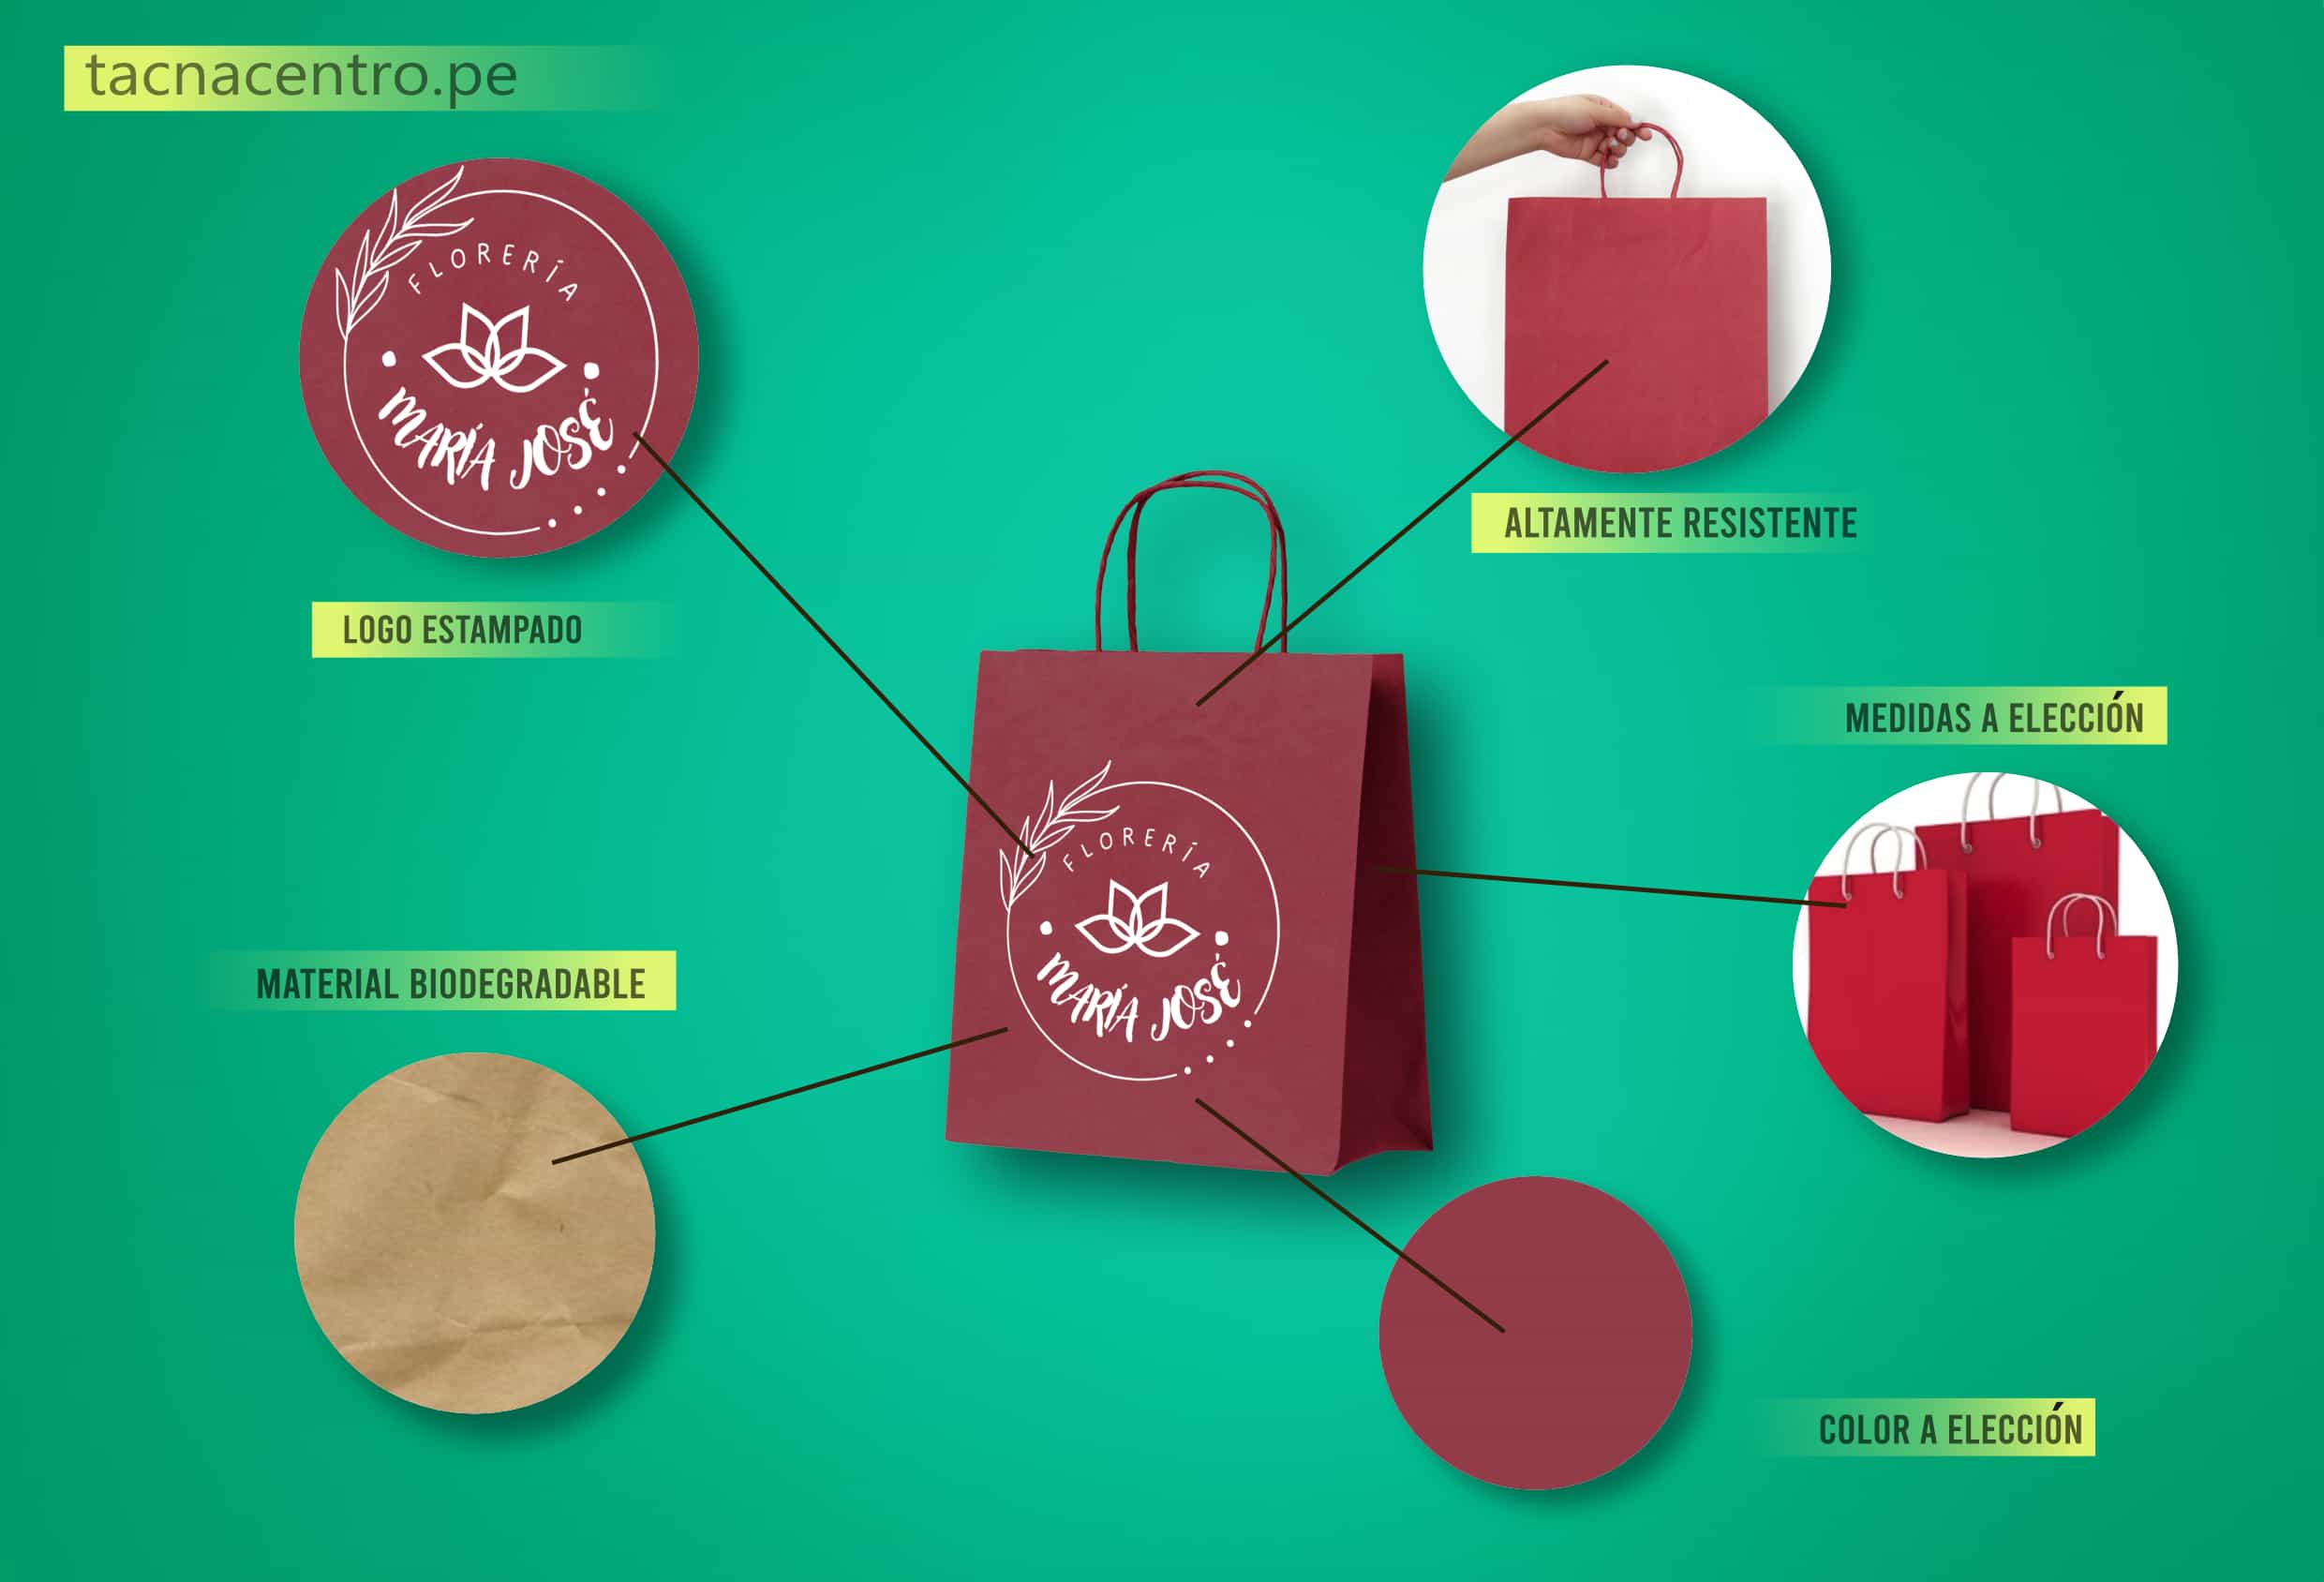 caracteristicas de las bolsas de papel kraft ecologicas publicitarias personalizadas con logo estampado